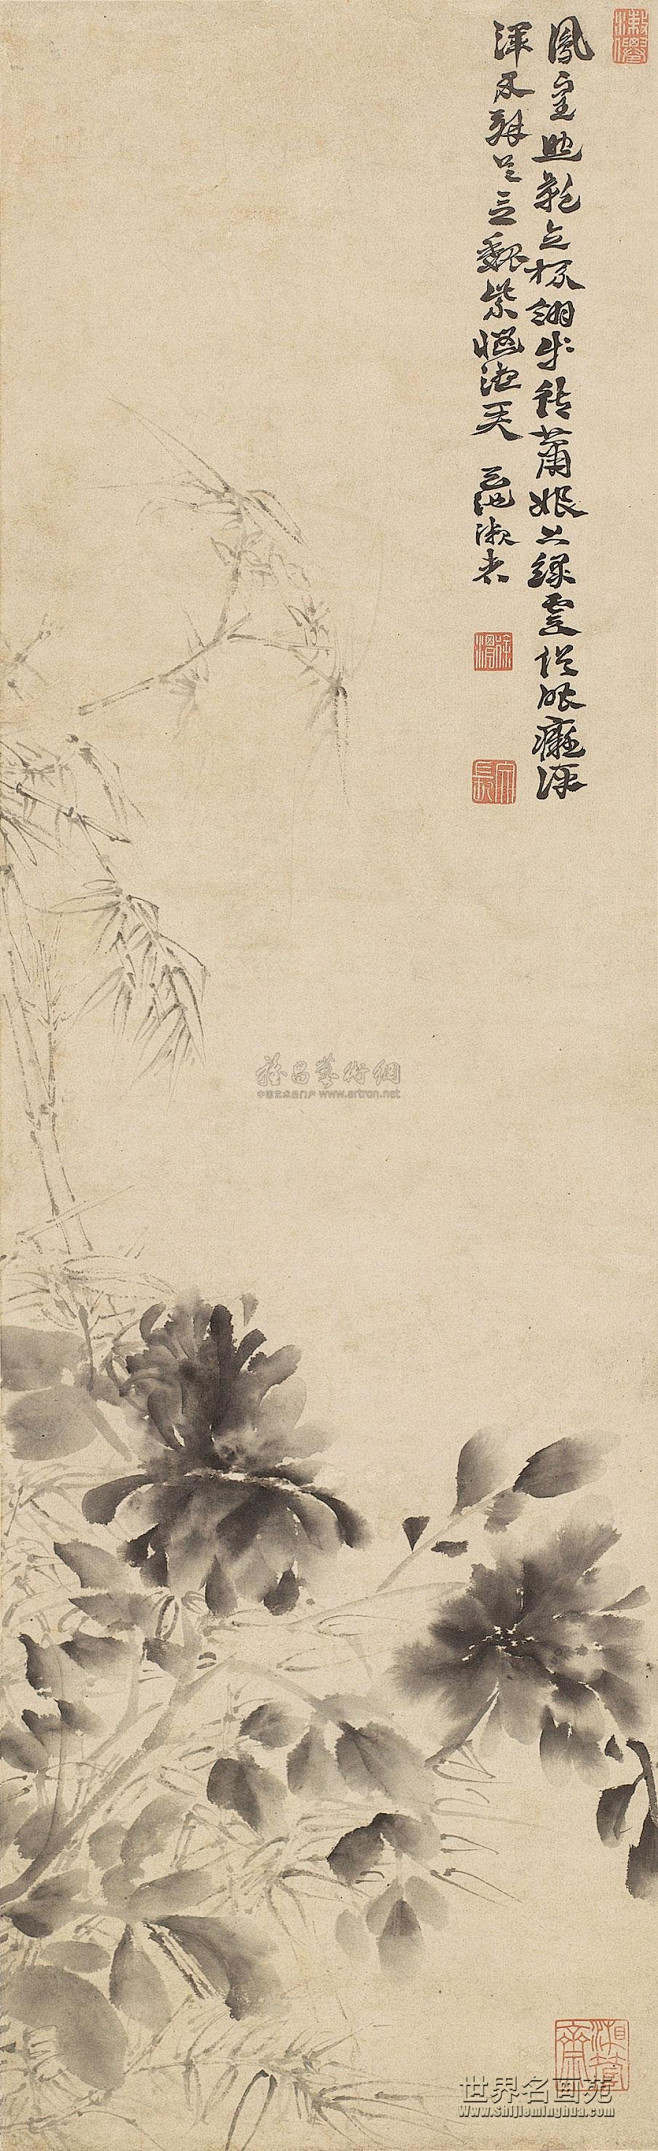 明 徐渭书画作品欣赏
墨竹牡丹 立轴